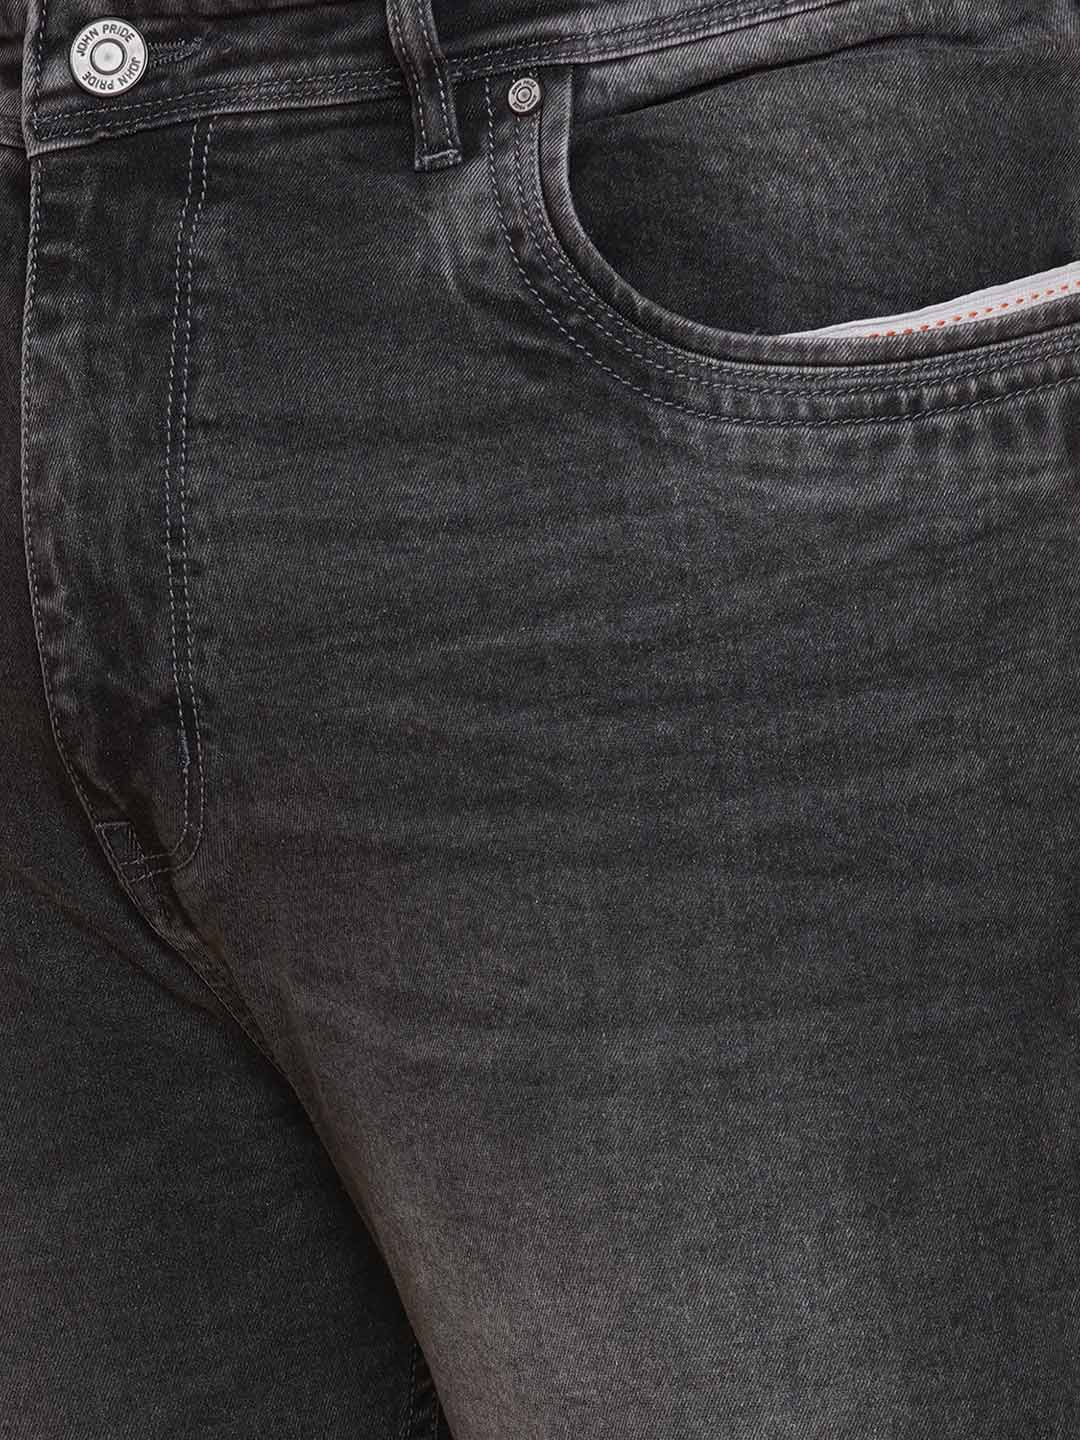 bottomwear/jeans/EJPJ25136/ejpj25136-2.jpg